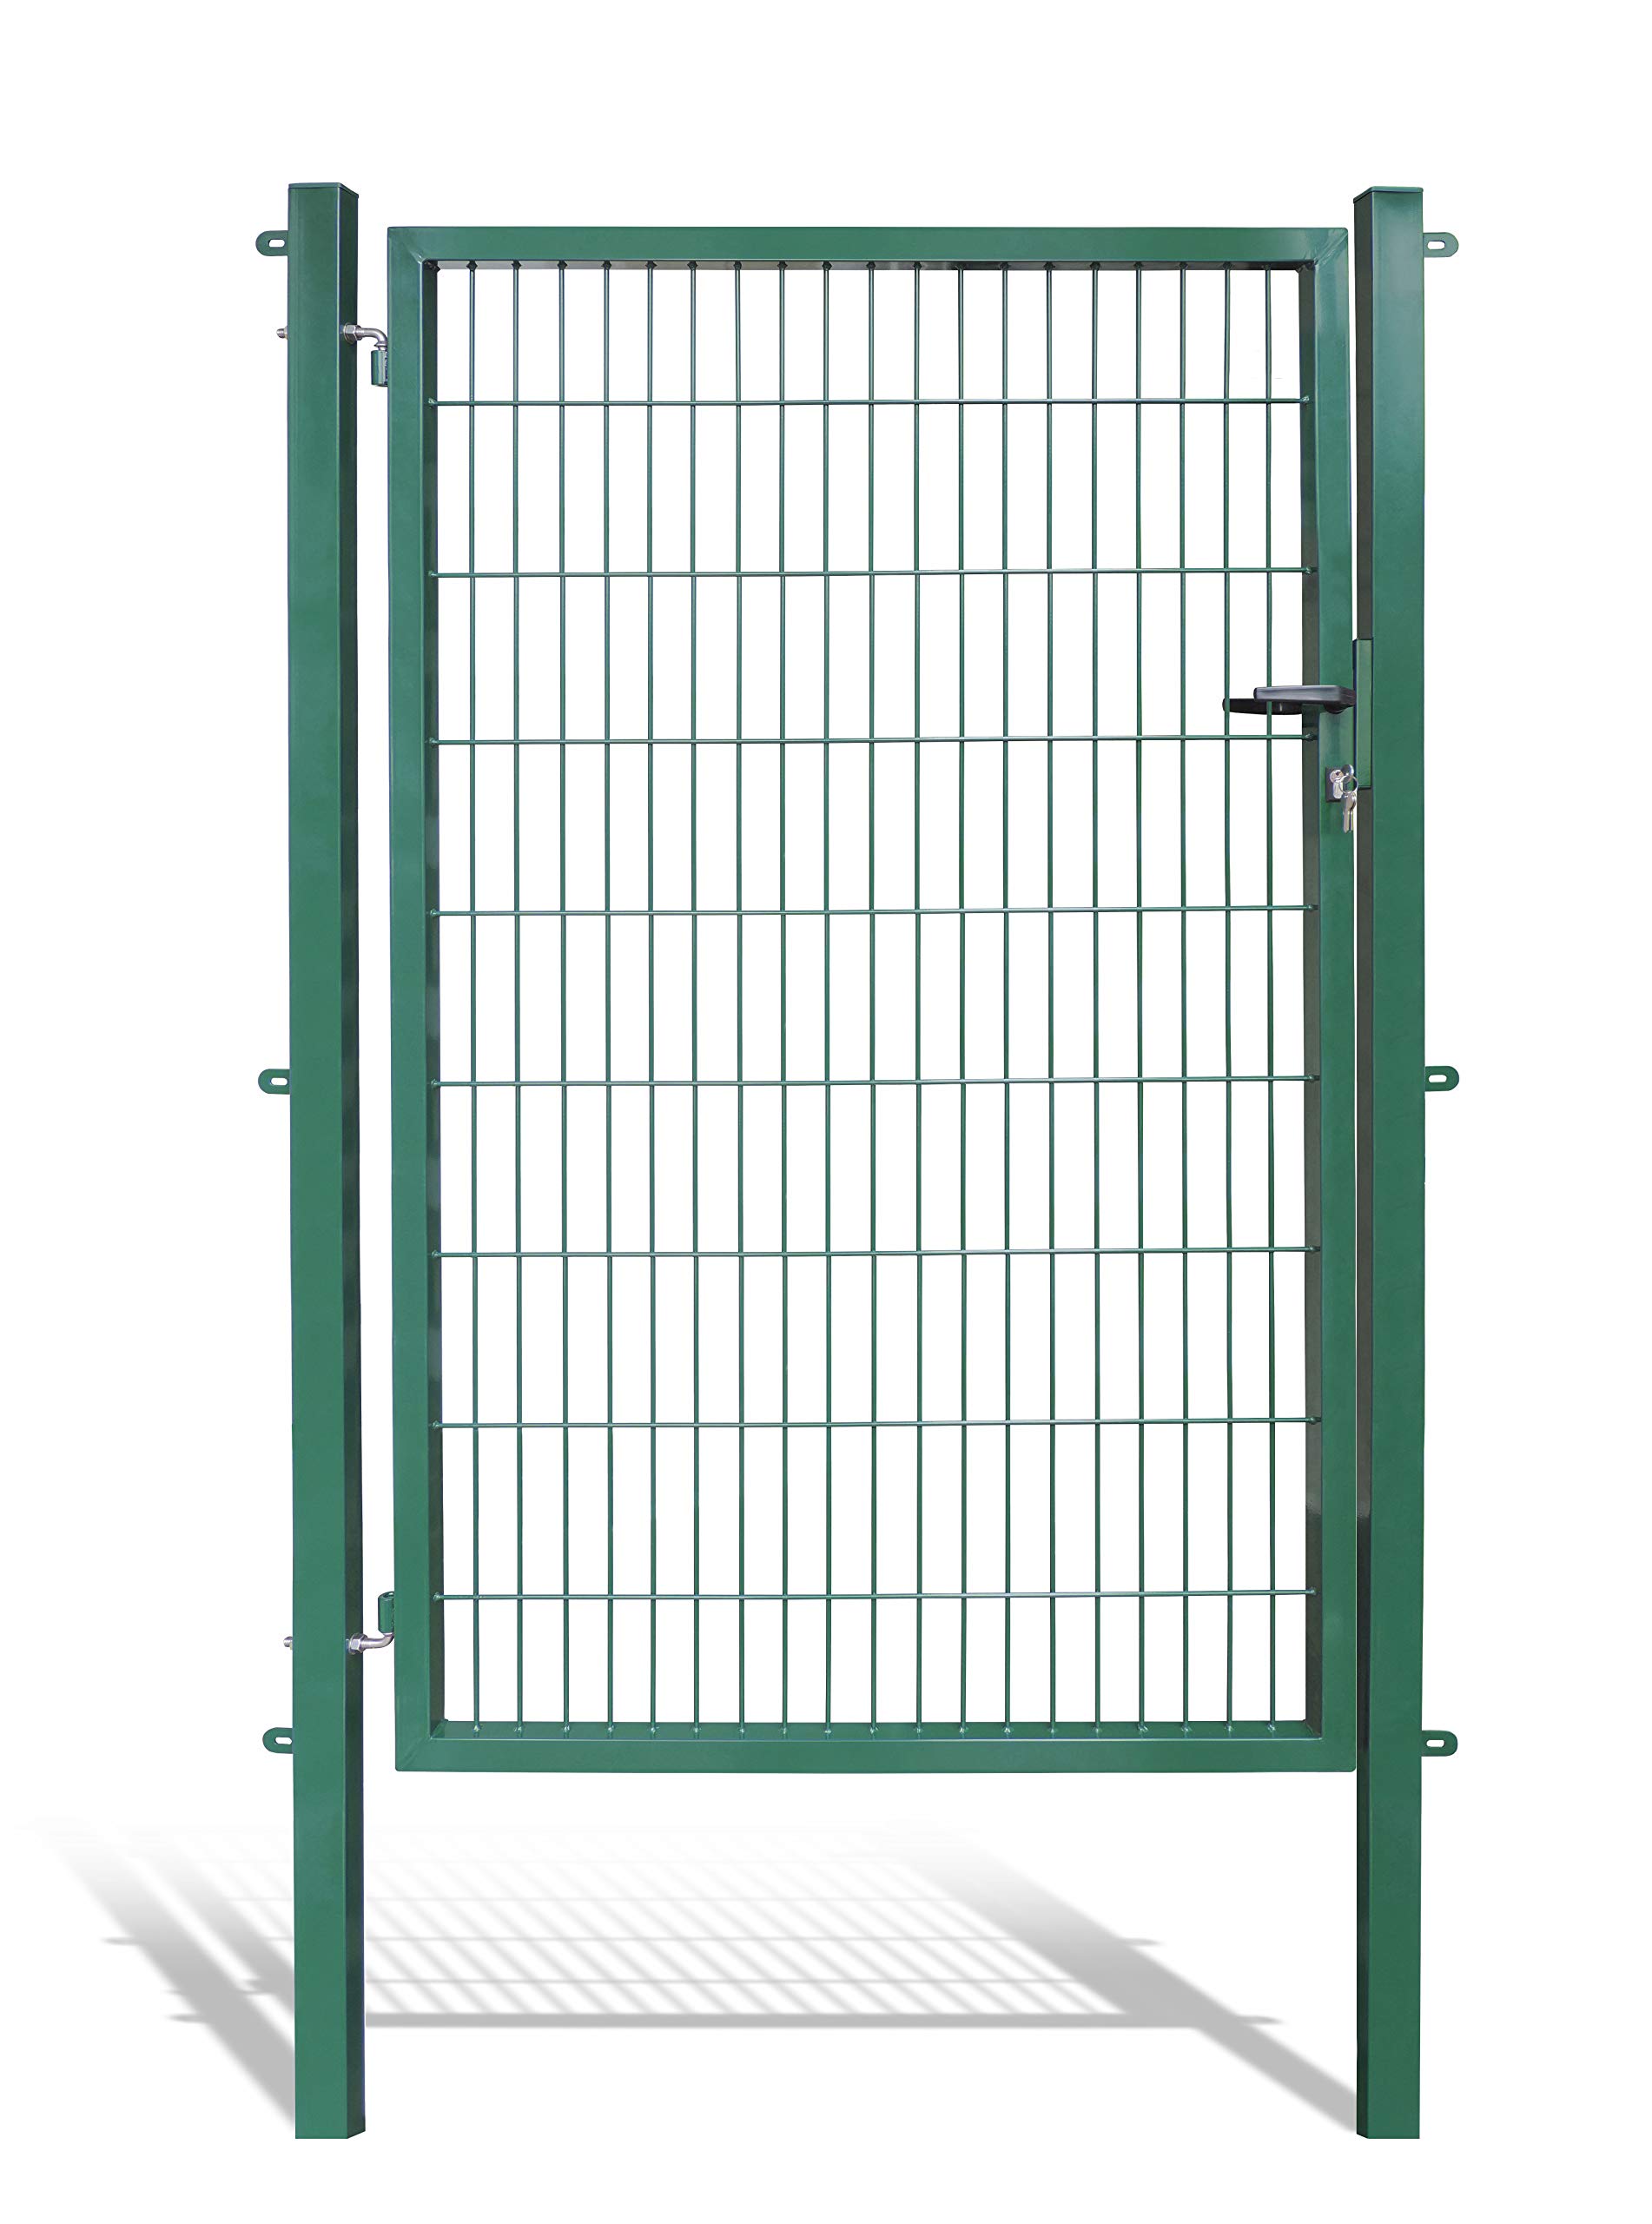 Koll Living Gartentore für Stabmattenzaun mit 120 cm Breite - Farbe und Höhe wählbar - inkl. Pfosten und Befestigungsmaterial (H 180 x B 120 cm, grün)